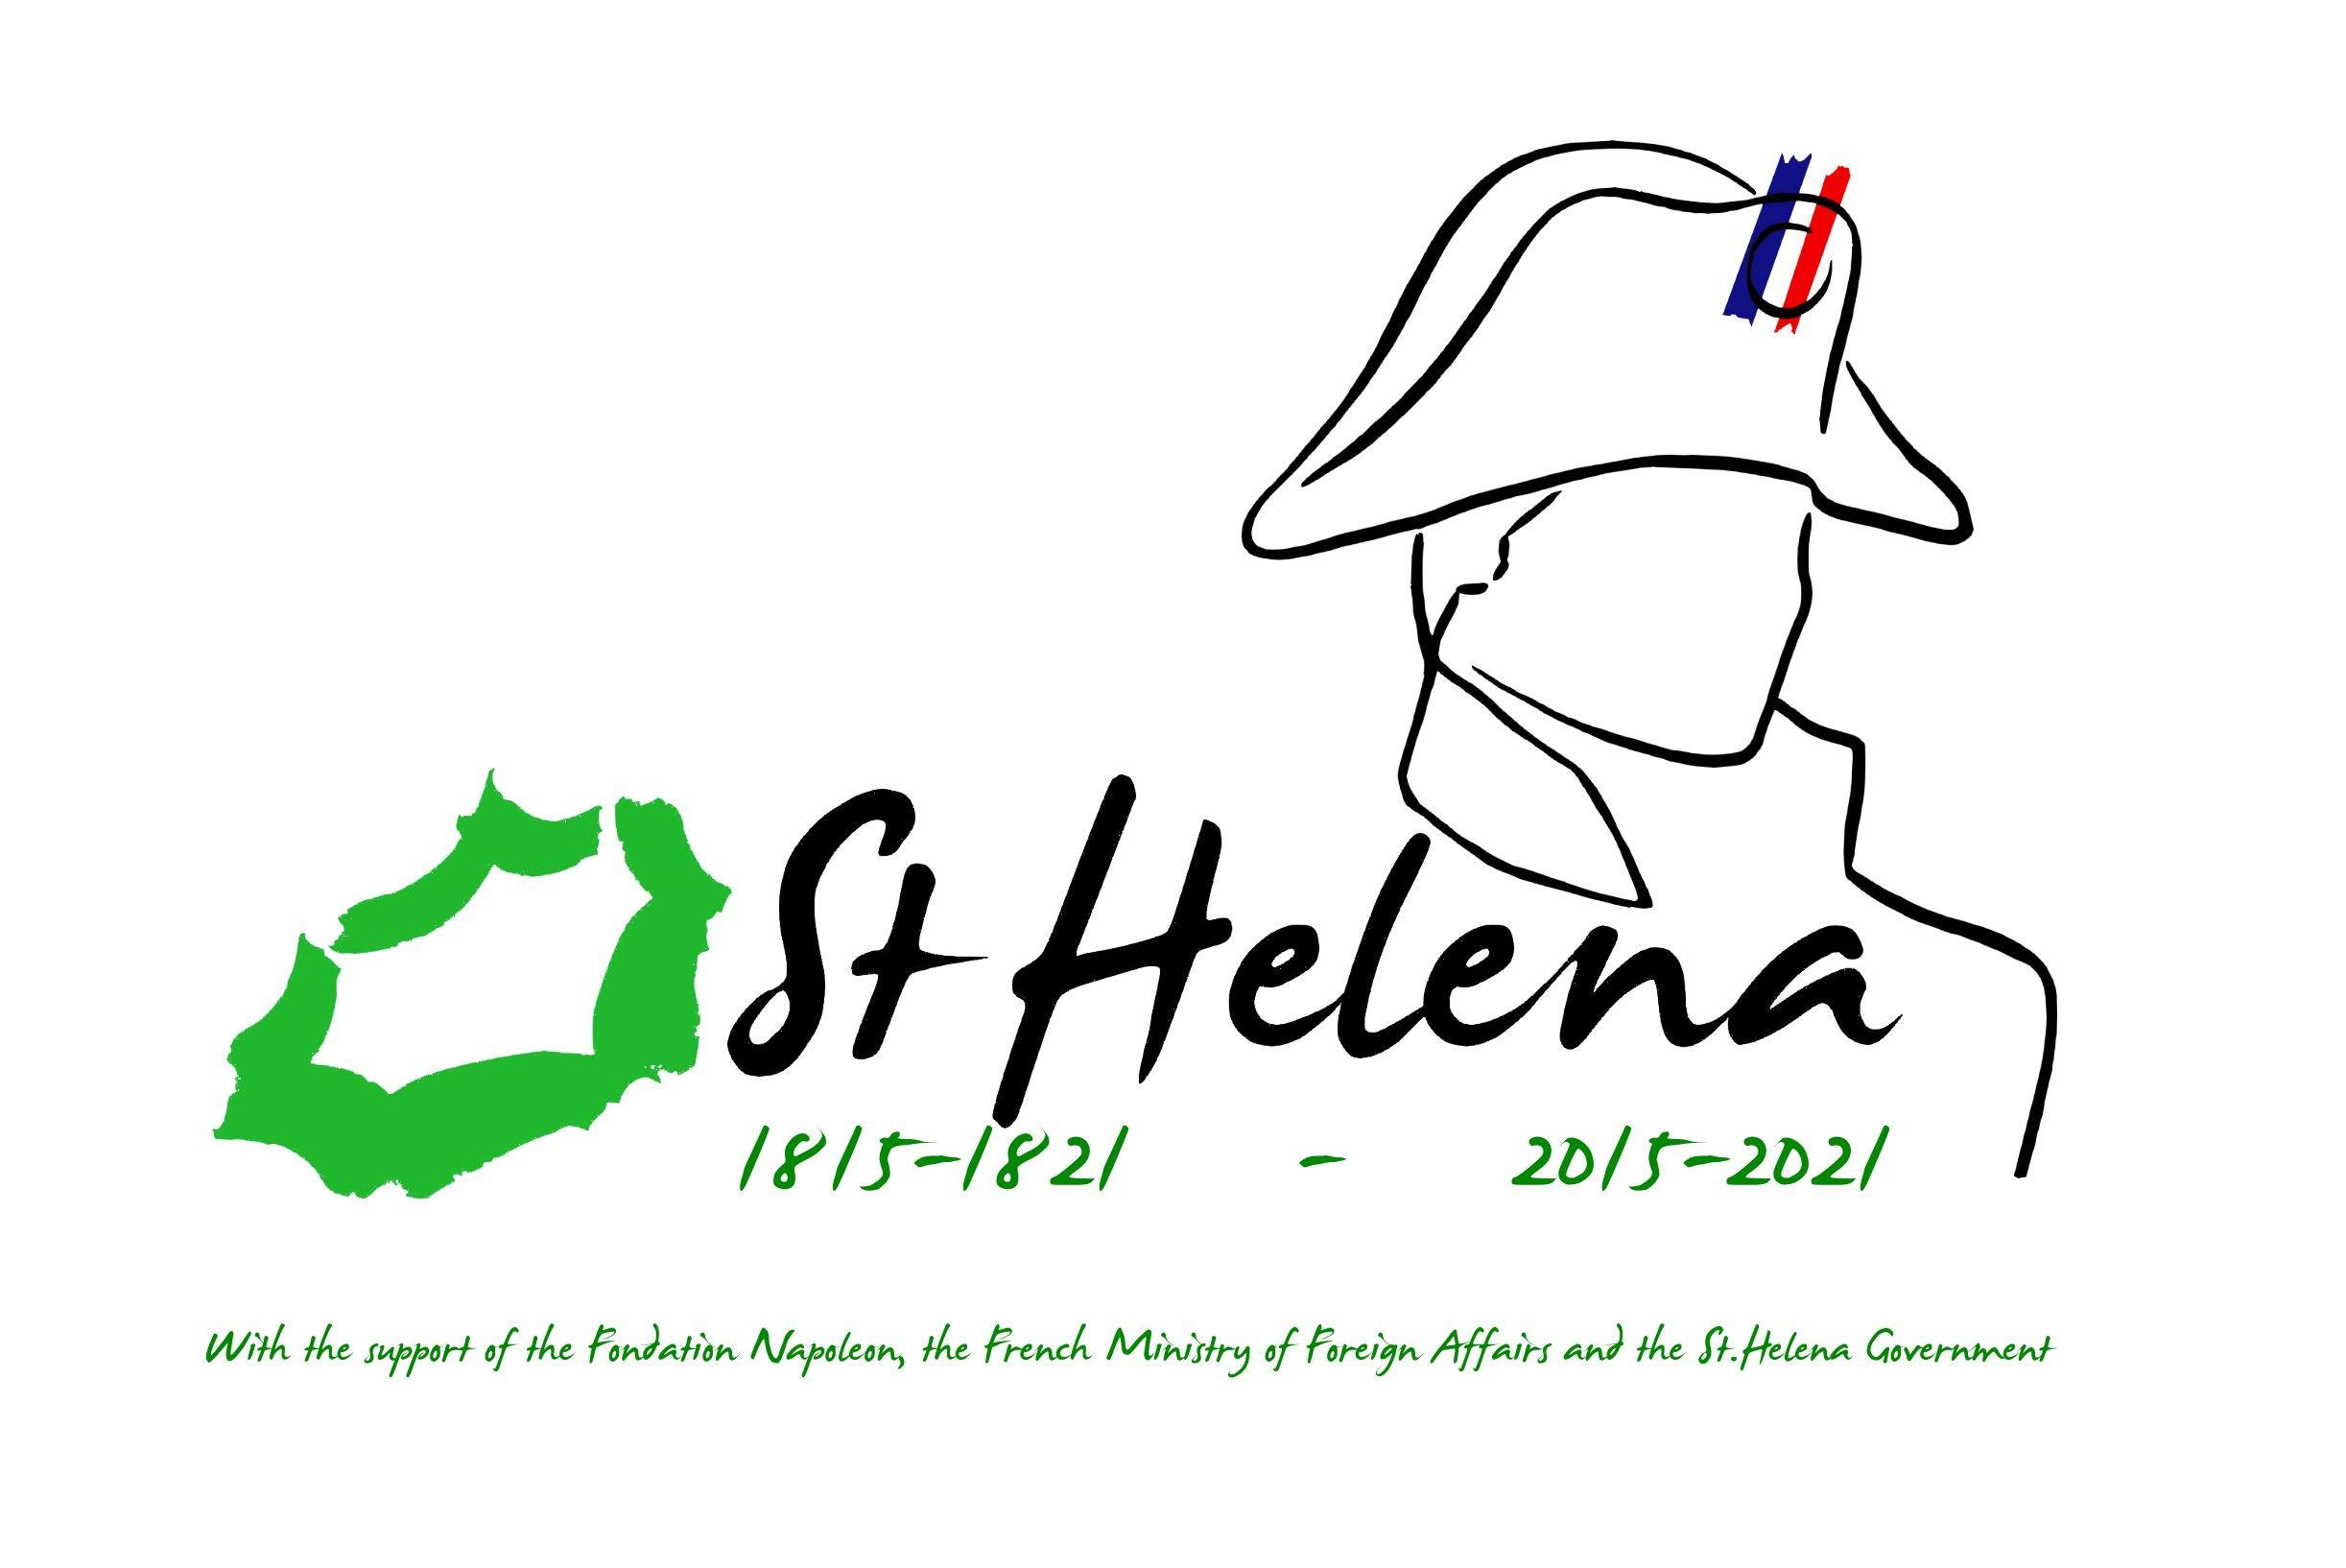 Helena Logo - St Helena launches new logo ahead of Napoleon's Bicentenary